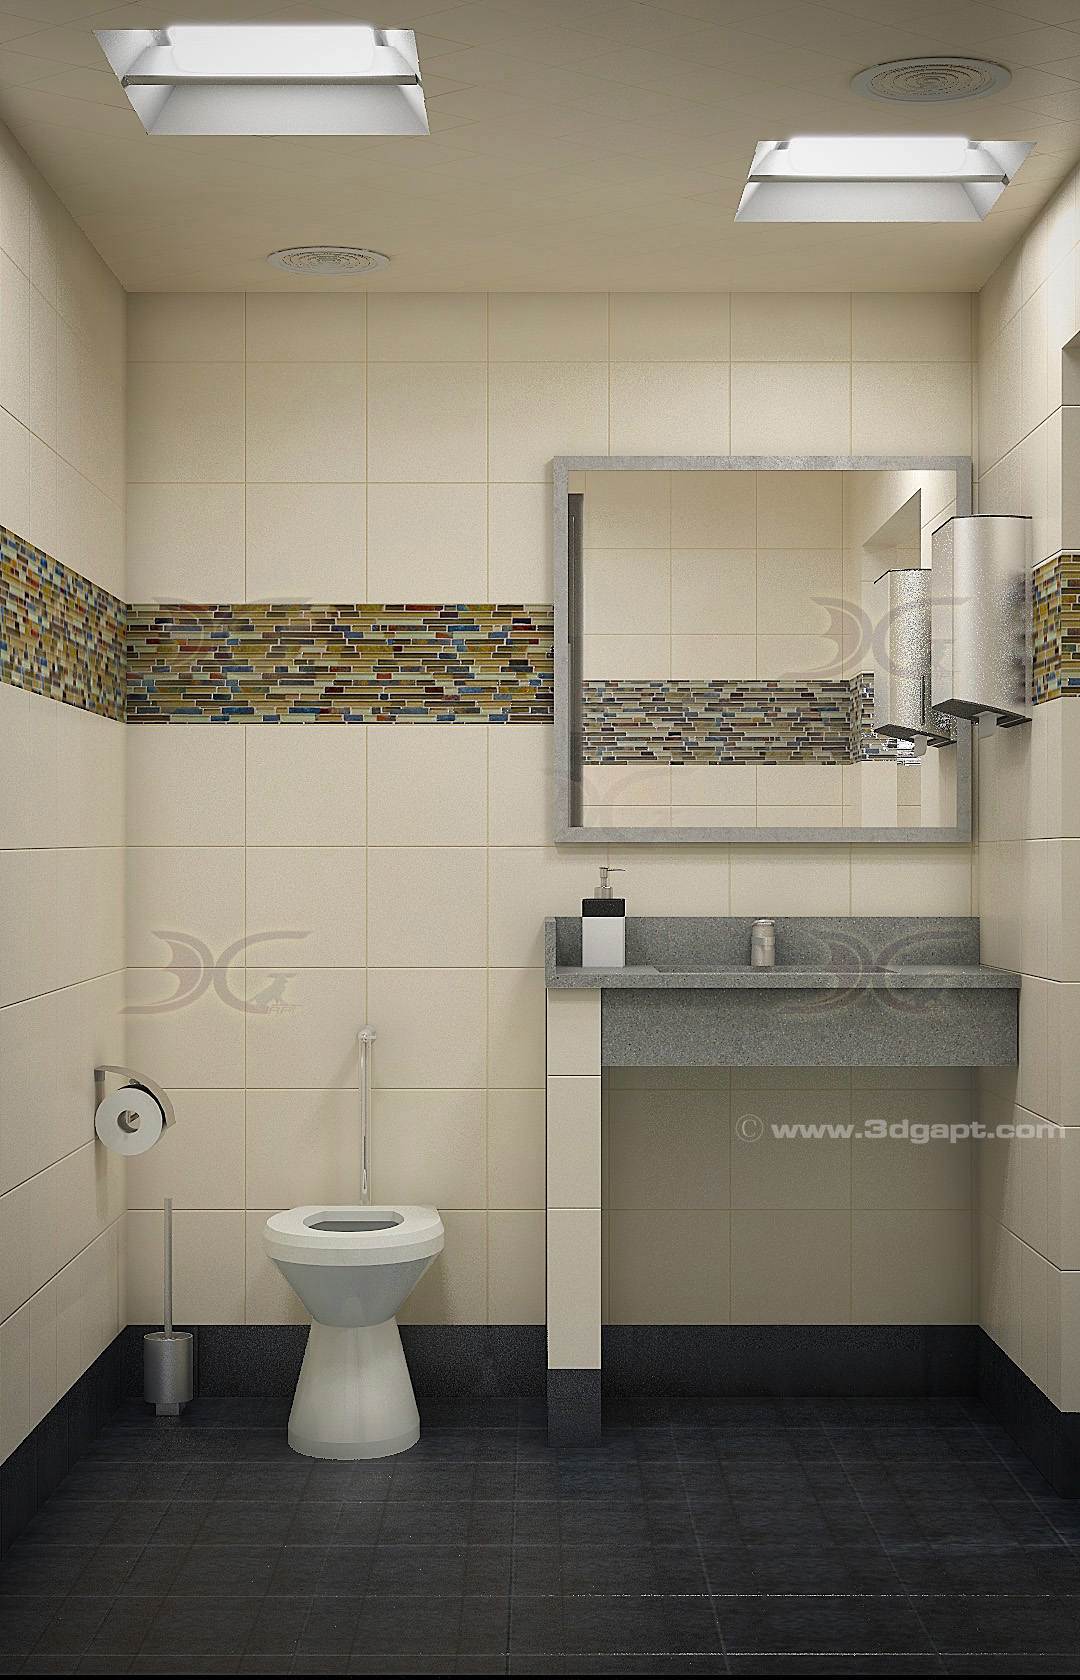 Architecture Interior Container Bathrooms0010